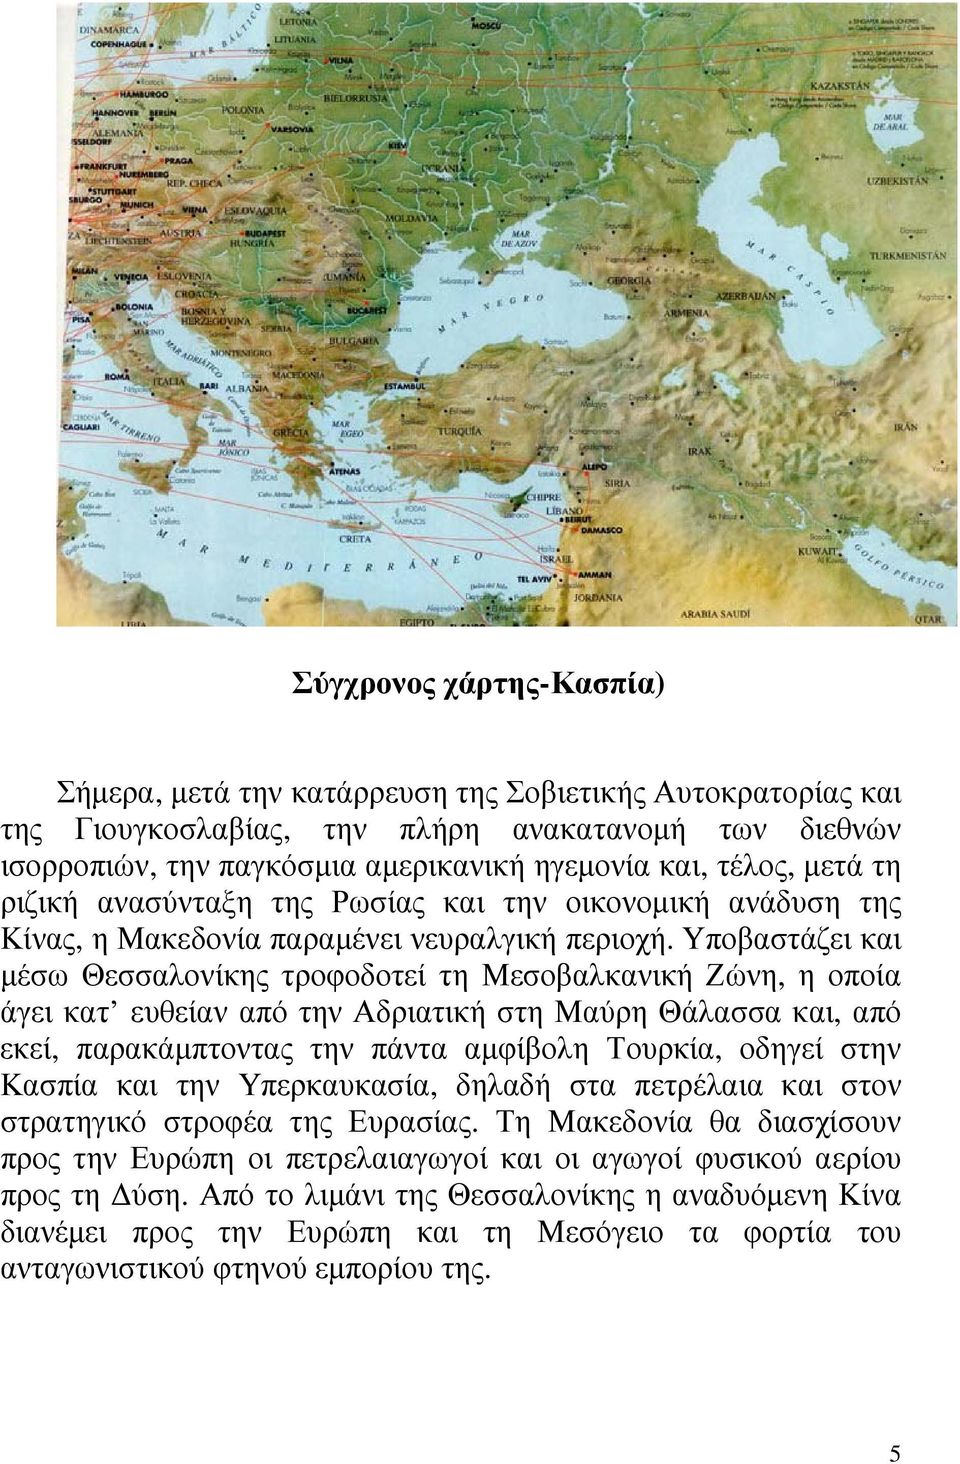 Υποβαστάζει και µέσω Θεσσαλονίκης τροφοδοτεί τη Μεσοβαλκανική Ζώνη, η οποία άγει κατ ευθείαν από την Αδριατική στη Μαύρη Θάλασσα και, από εκεί, παρακάµπτοντας την πάντα αµφίβολη Τουρκία, οδηγεί στην